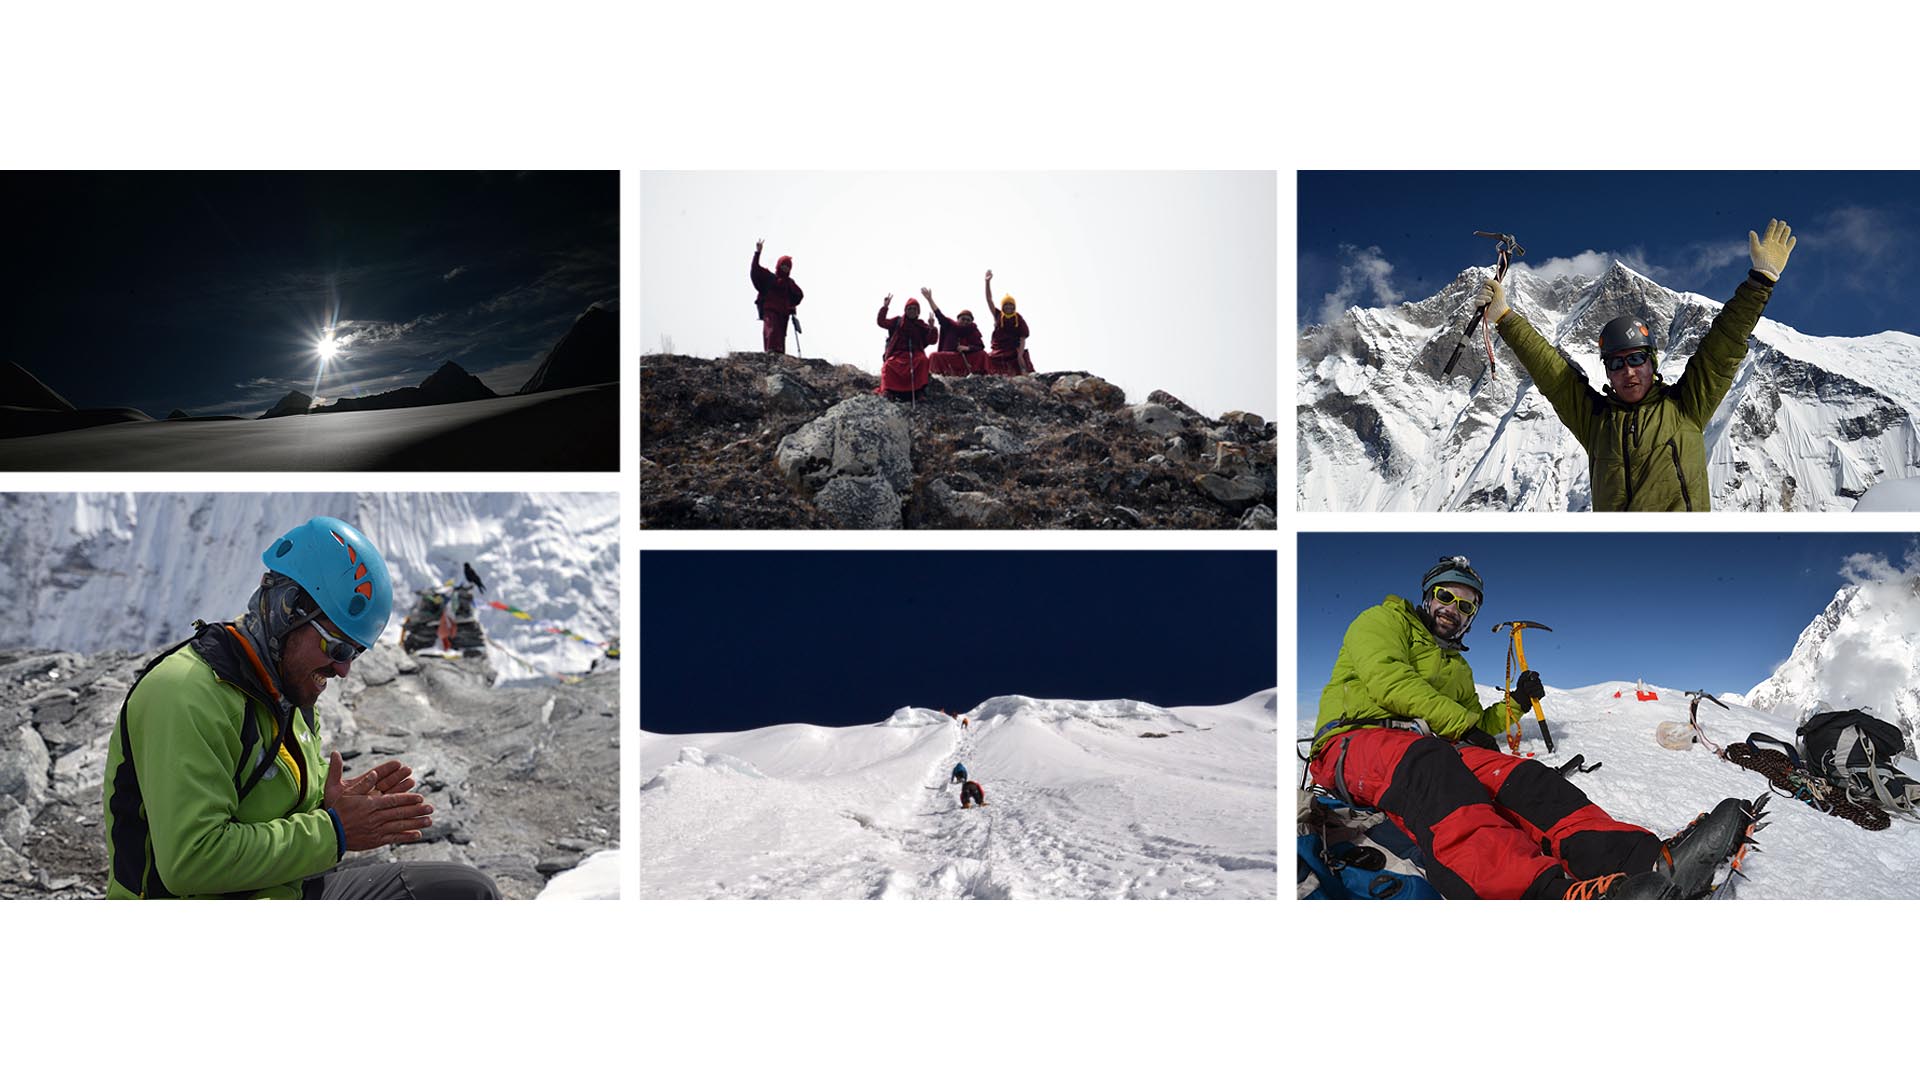 Expedición venezolana de montañistas cumple sus objetivos; logran comunicarse y reportan desde Nepal sus más recientes desafíos, resultados y vivencias